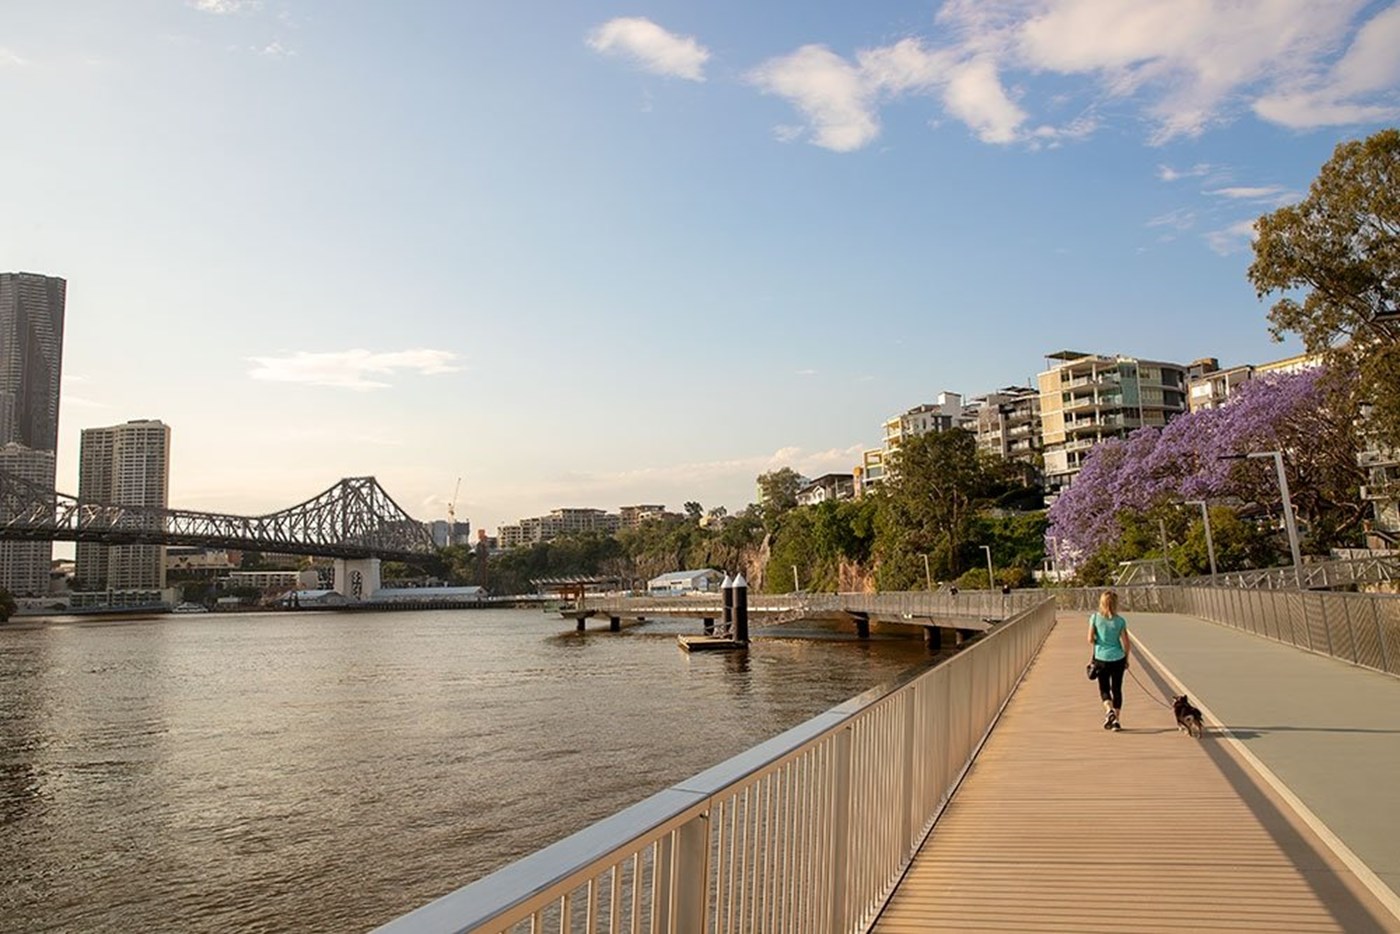 Brisbane Riverwalk